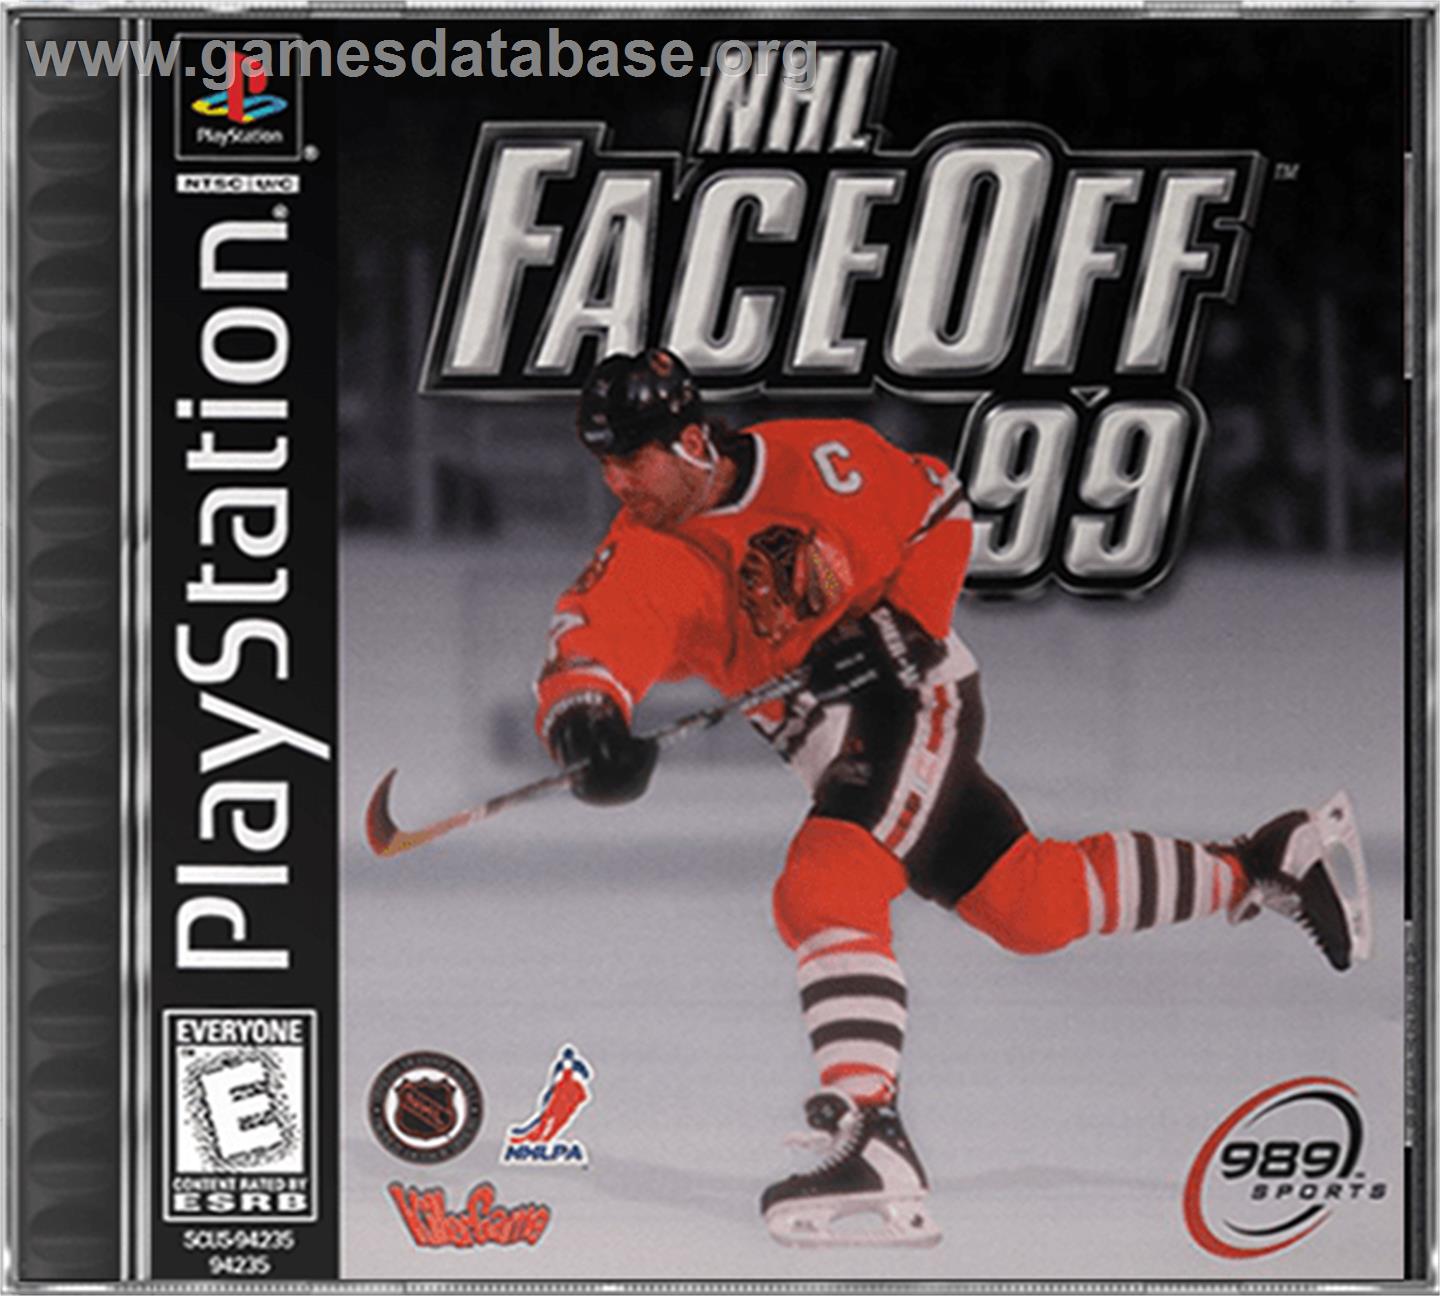 NHL FaceOff '99 - Sony Playstation - Artwork - Box